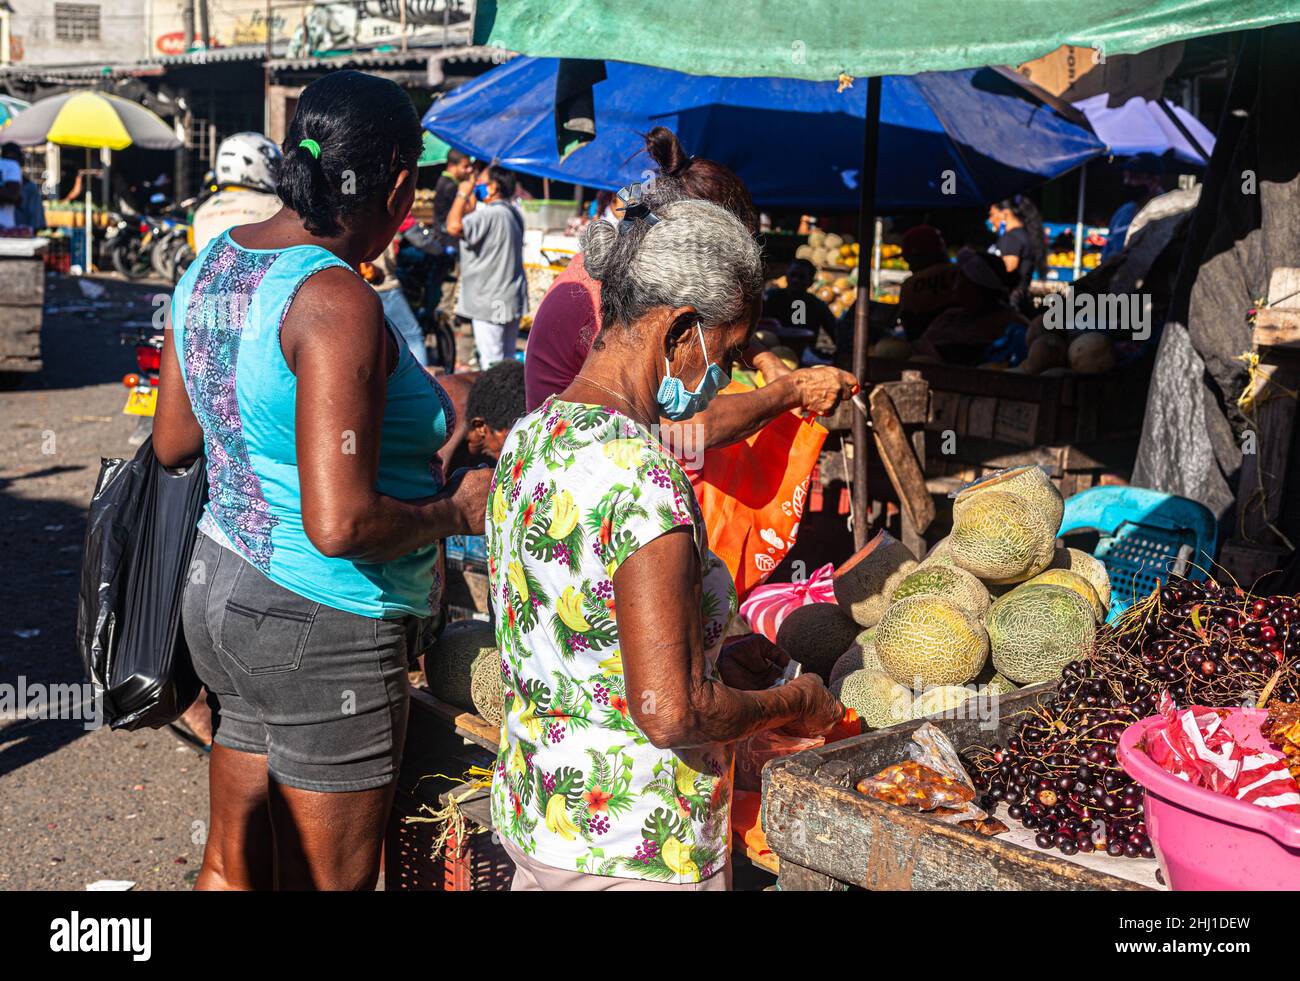 Tägliche Aktivitäten an einem tropischen Obststand, Mercado Bazurto, Cartagena de Indias, Kolumbien. Stockfoto